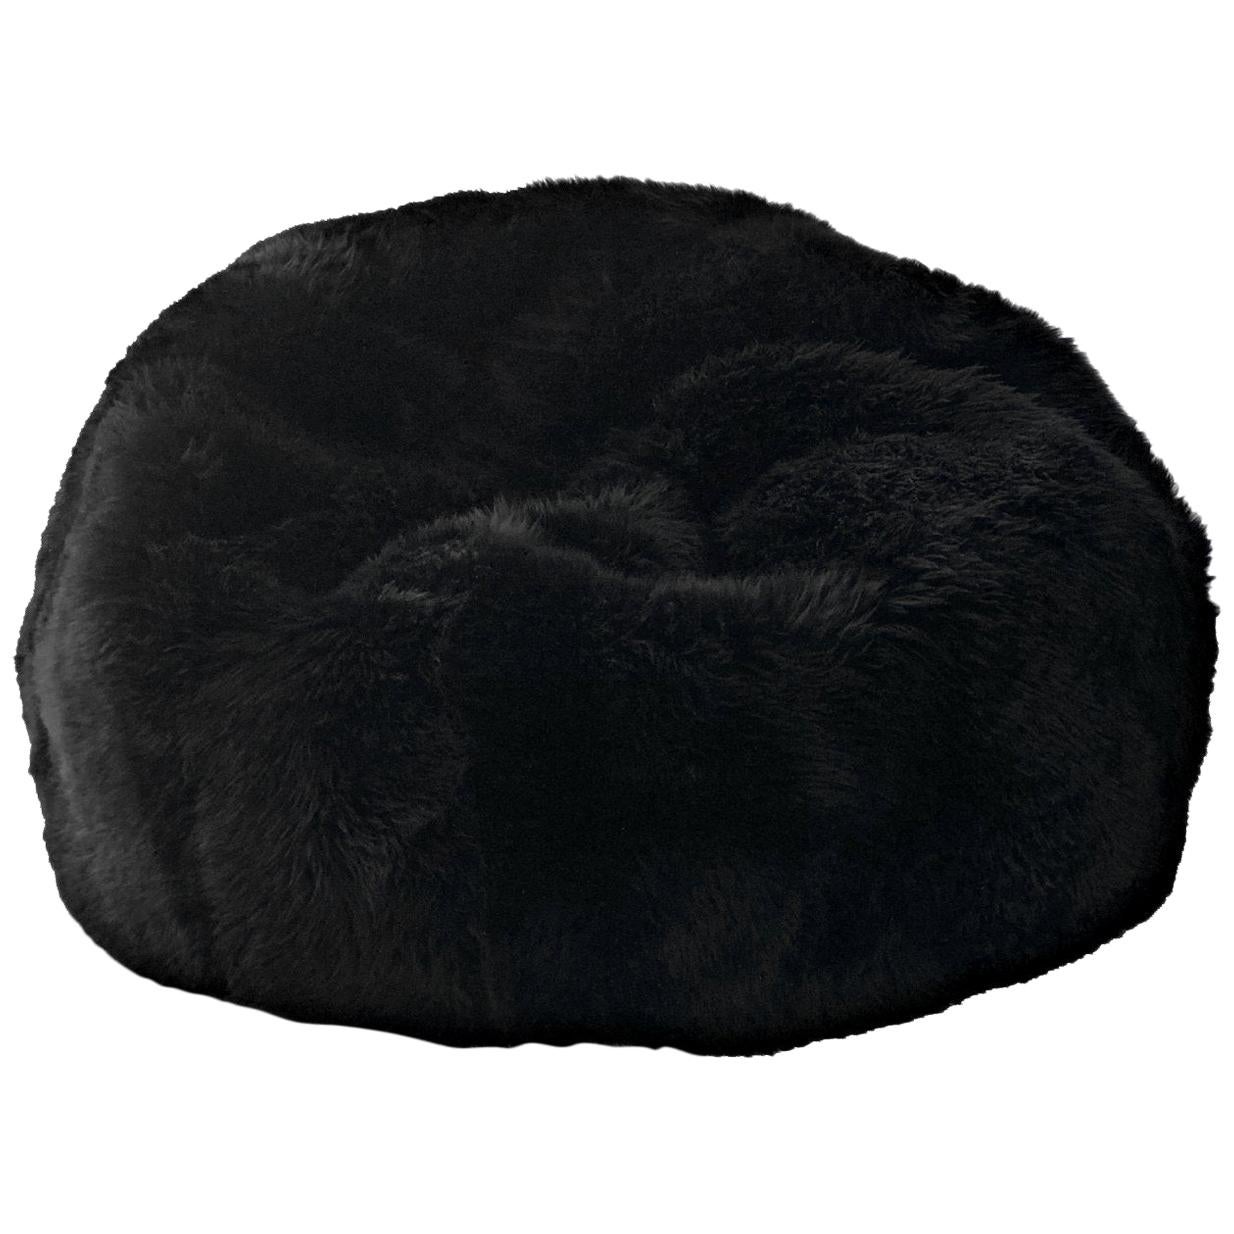 Black Large Sheepskin Bean Bag Cover, Merino Sheepskin, Made in Australia For Sale